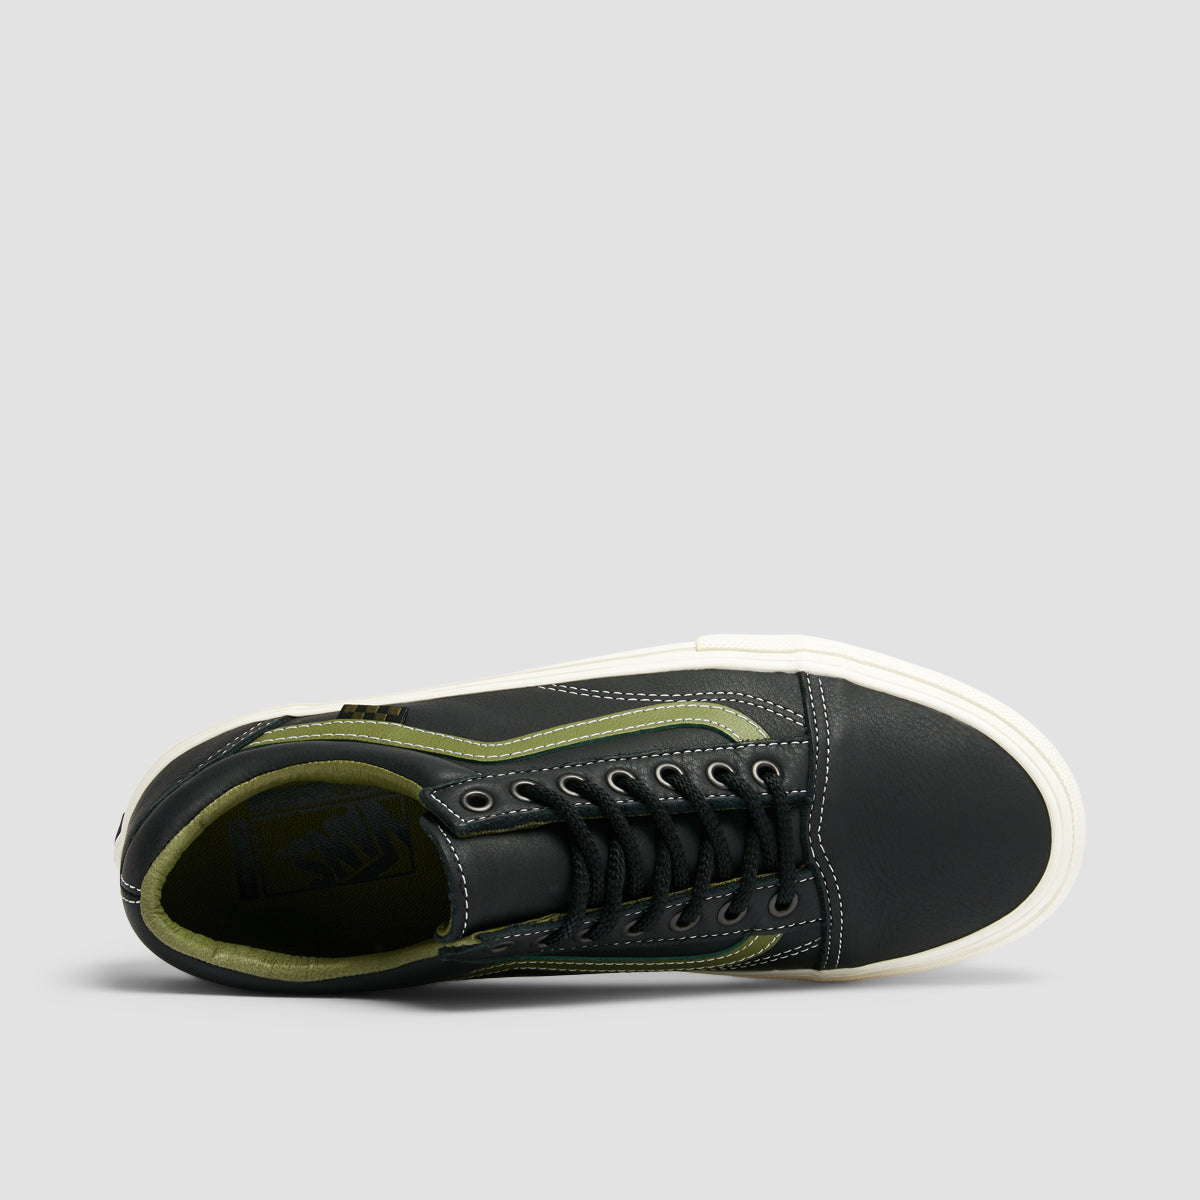 Vans Skate Old Skool Shoes - Butter Leather Black/Green